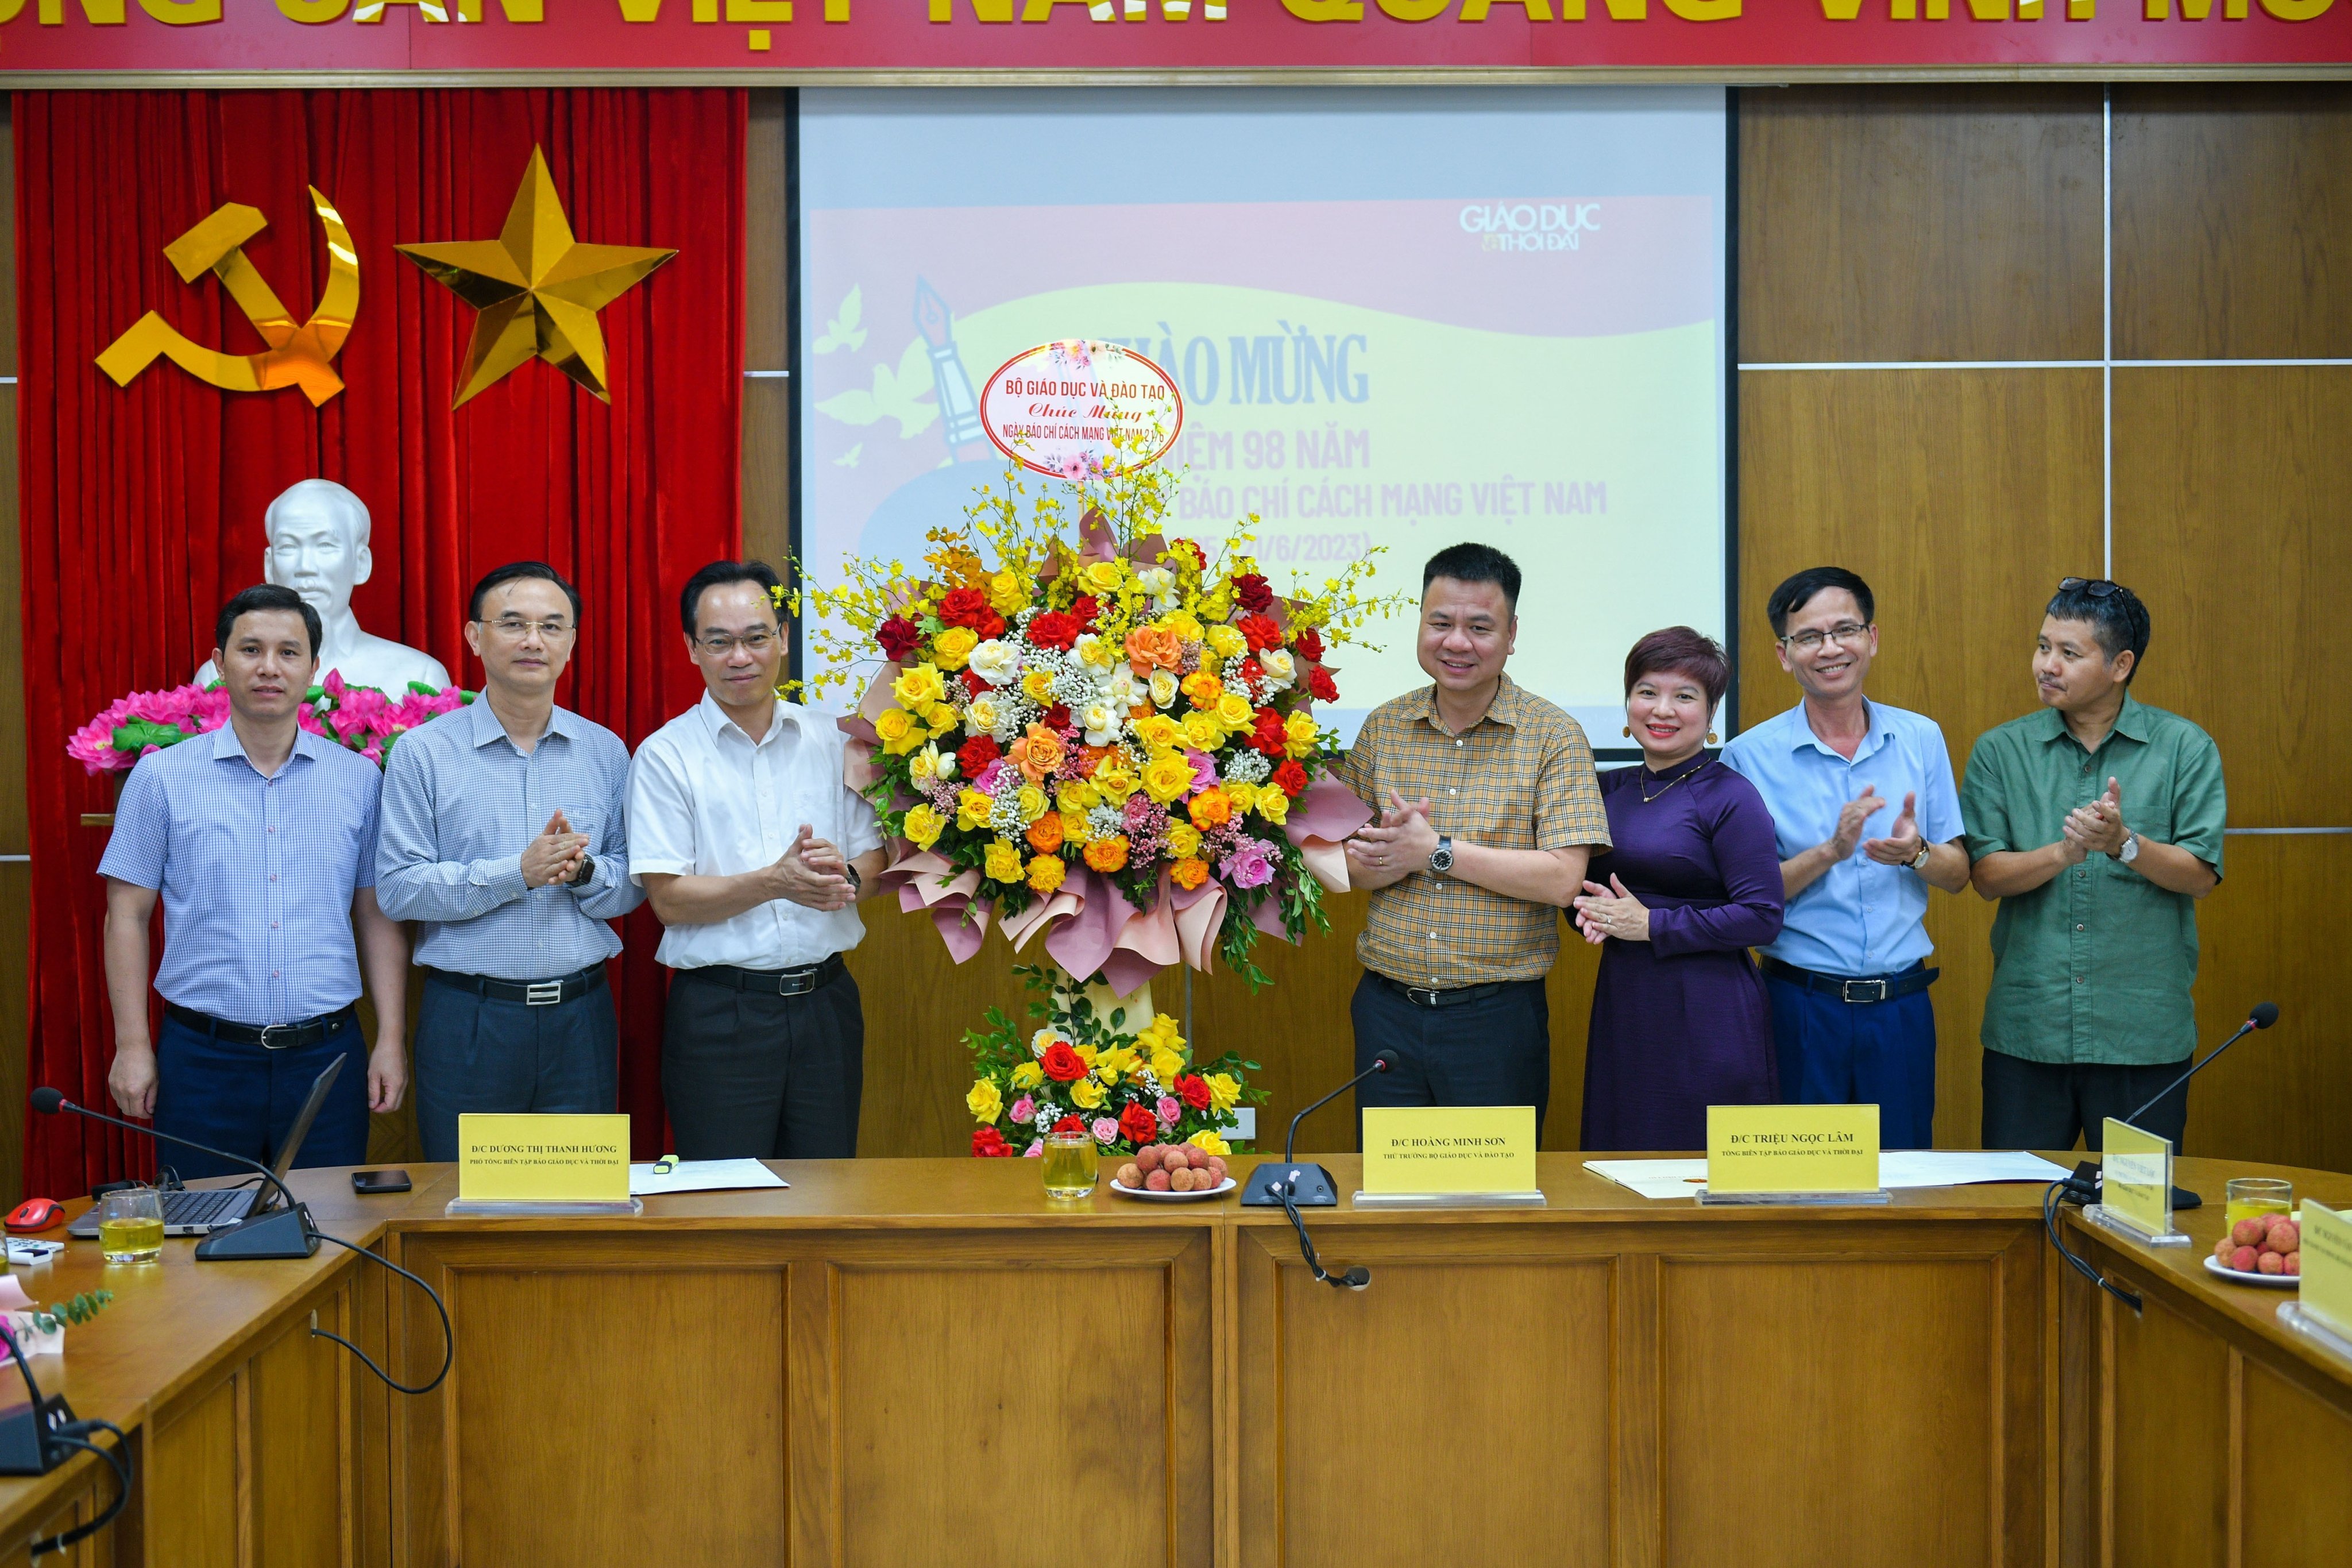 Thứ trưởng Bộ GD&ĐT Hoàng Minh Sơn tặng hoa, chúc mừng tập thể Báo Giáo dục & Thời đại nhân kỷ niệm 98 năm Ngày Báo chí cách mạng Việt Nam.